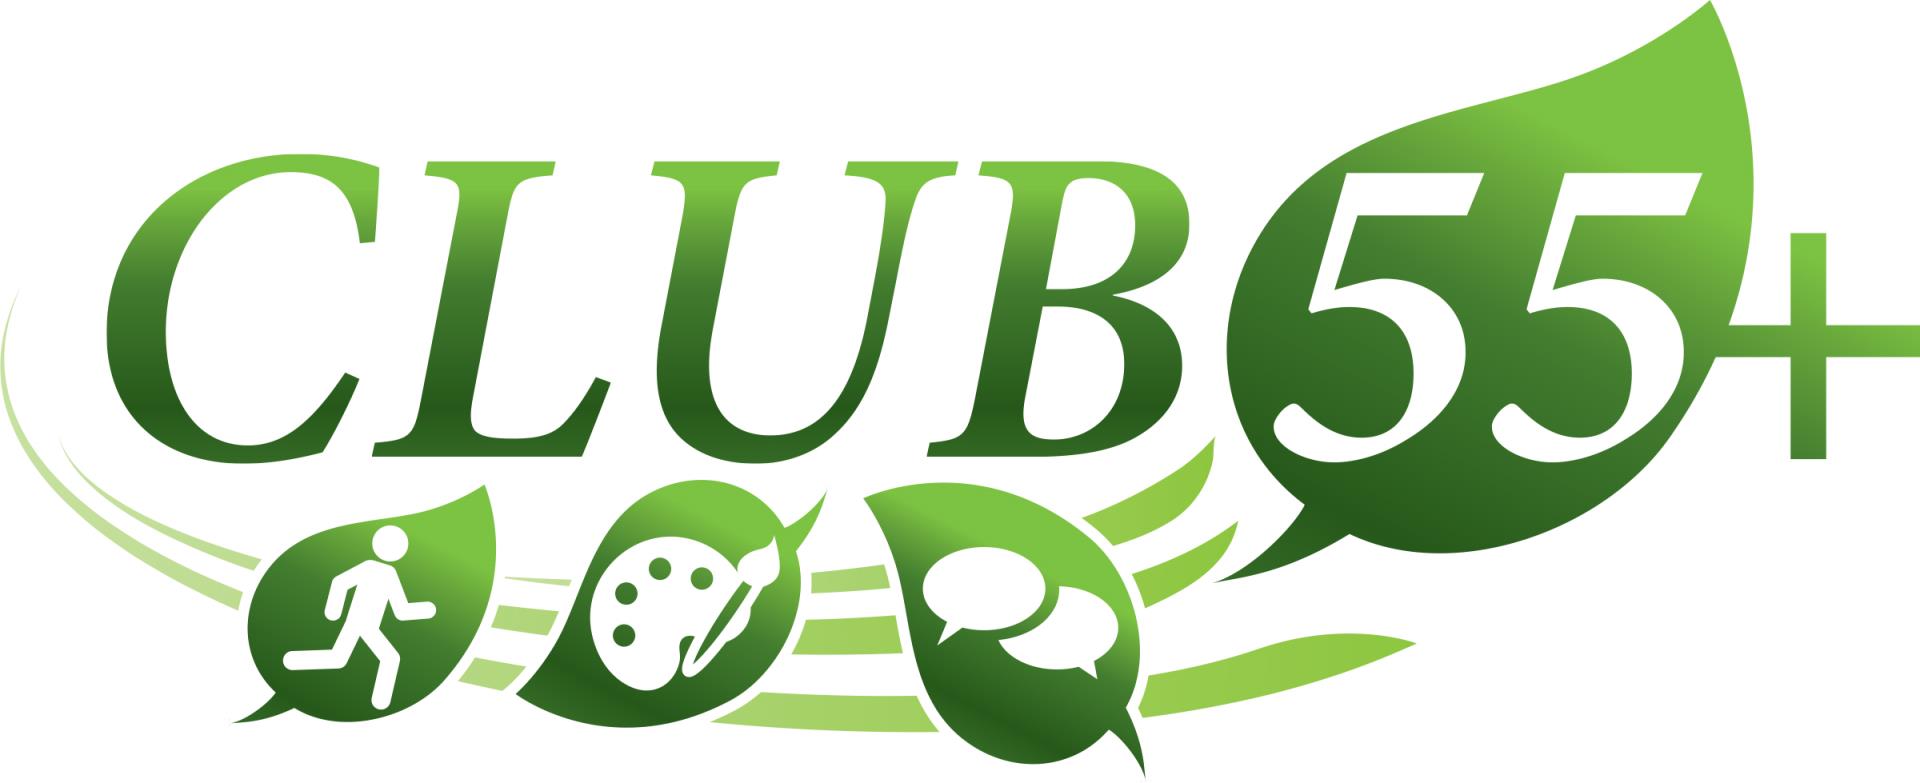 Club 55 Logo